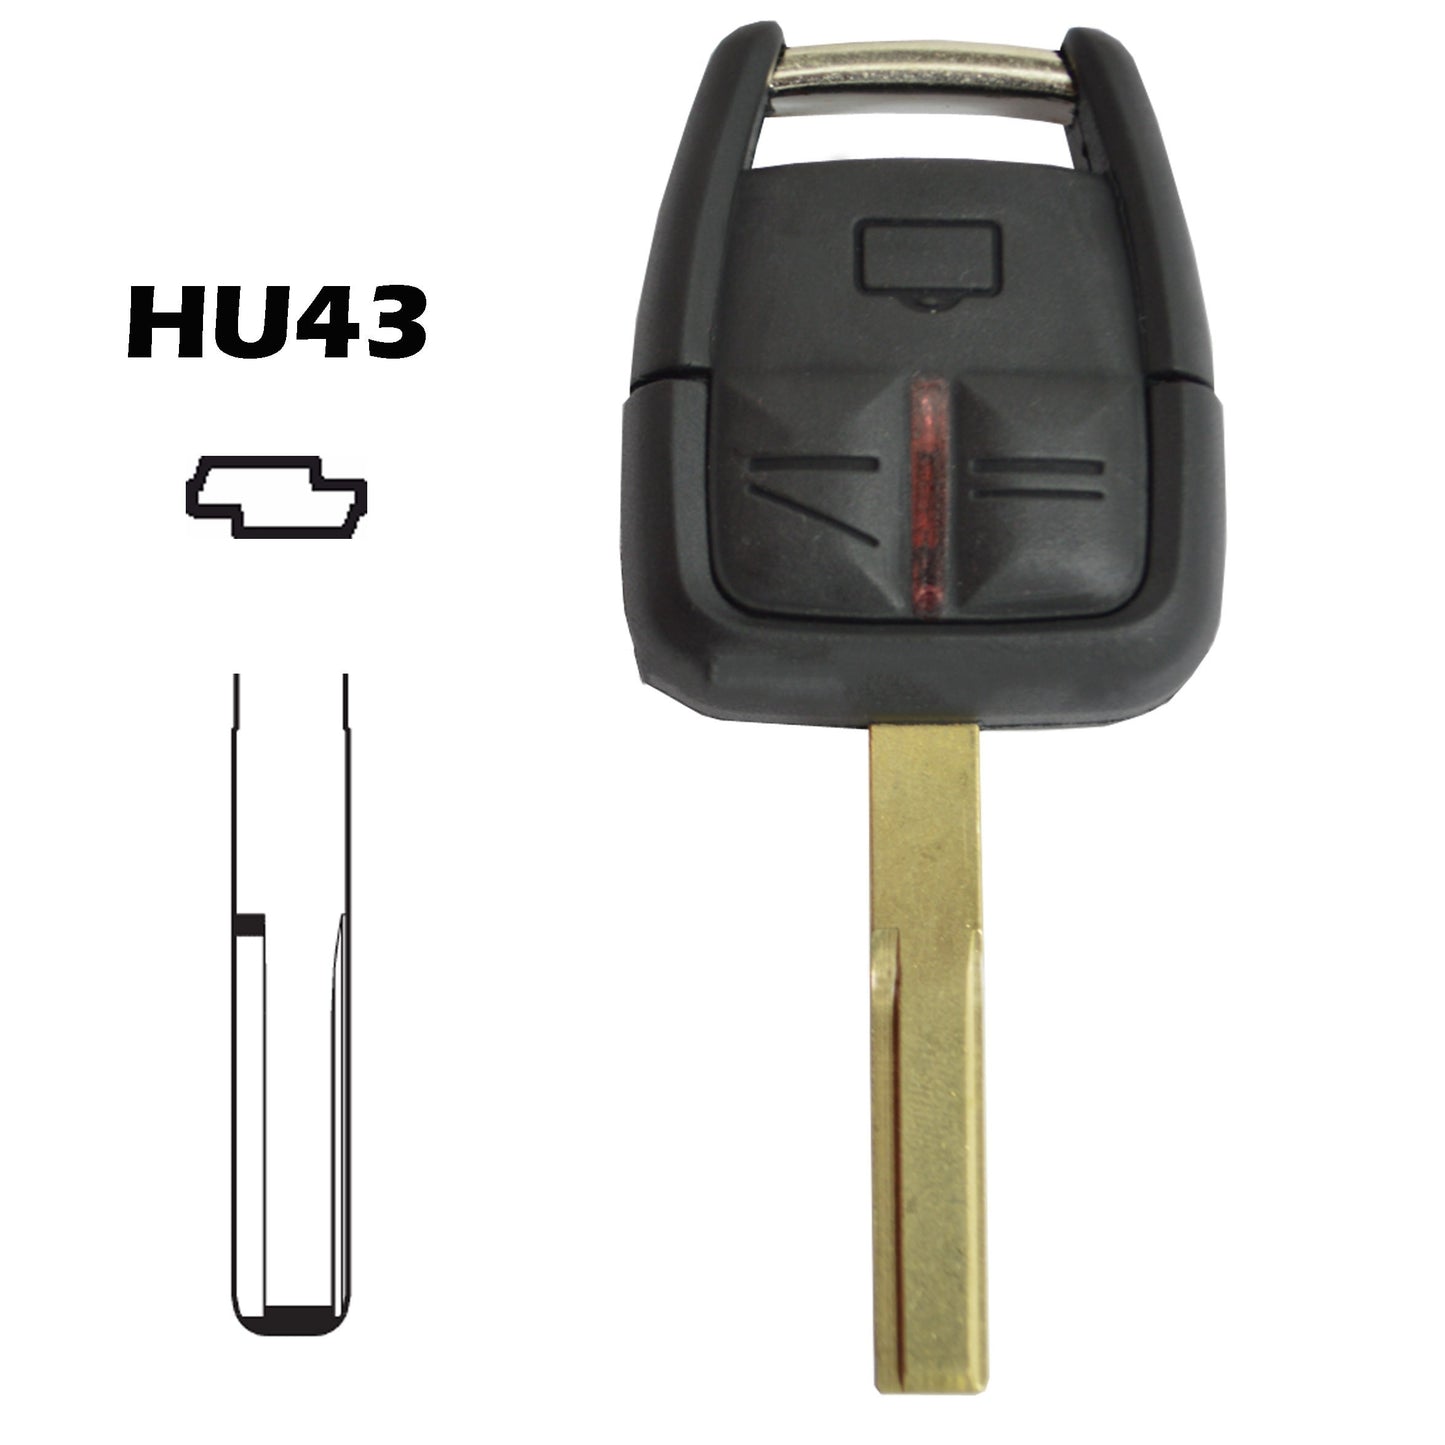 Caixa chave HU43 comando 3 botões Opel Chevrolet